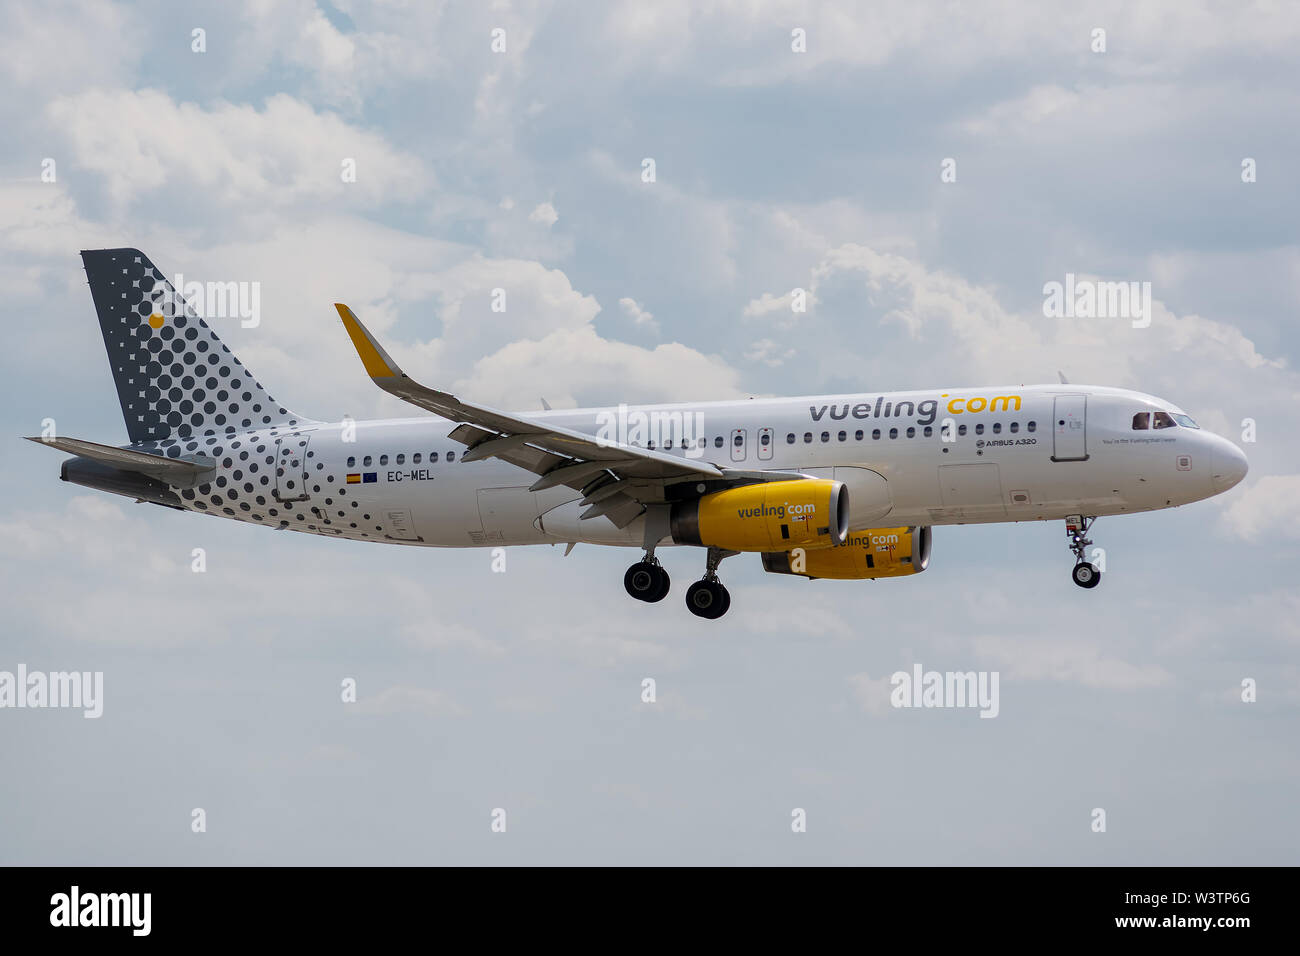 EC-MEL Airbus A320-232-6450 le 11 juillet 2019, l'atterrissage sur les pistes de Paris Roissy à la fin du vol Vueling vy8775 à partir de Londres Banque D'Images